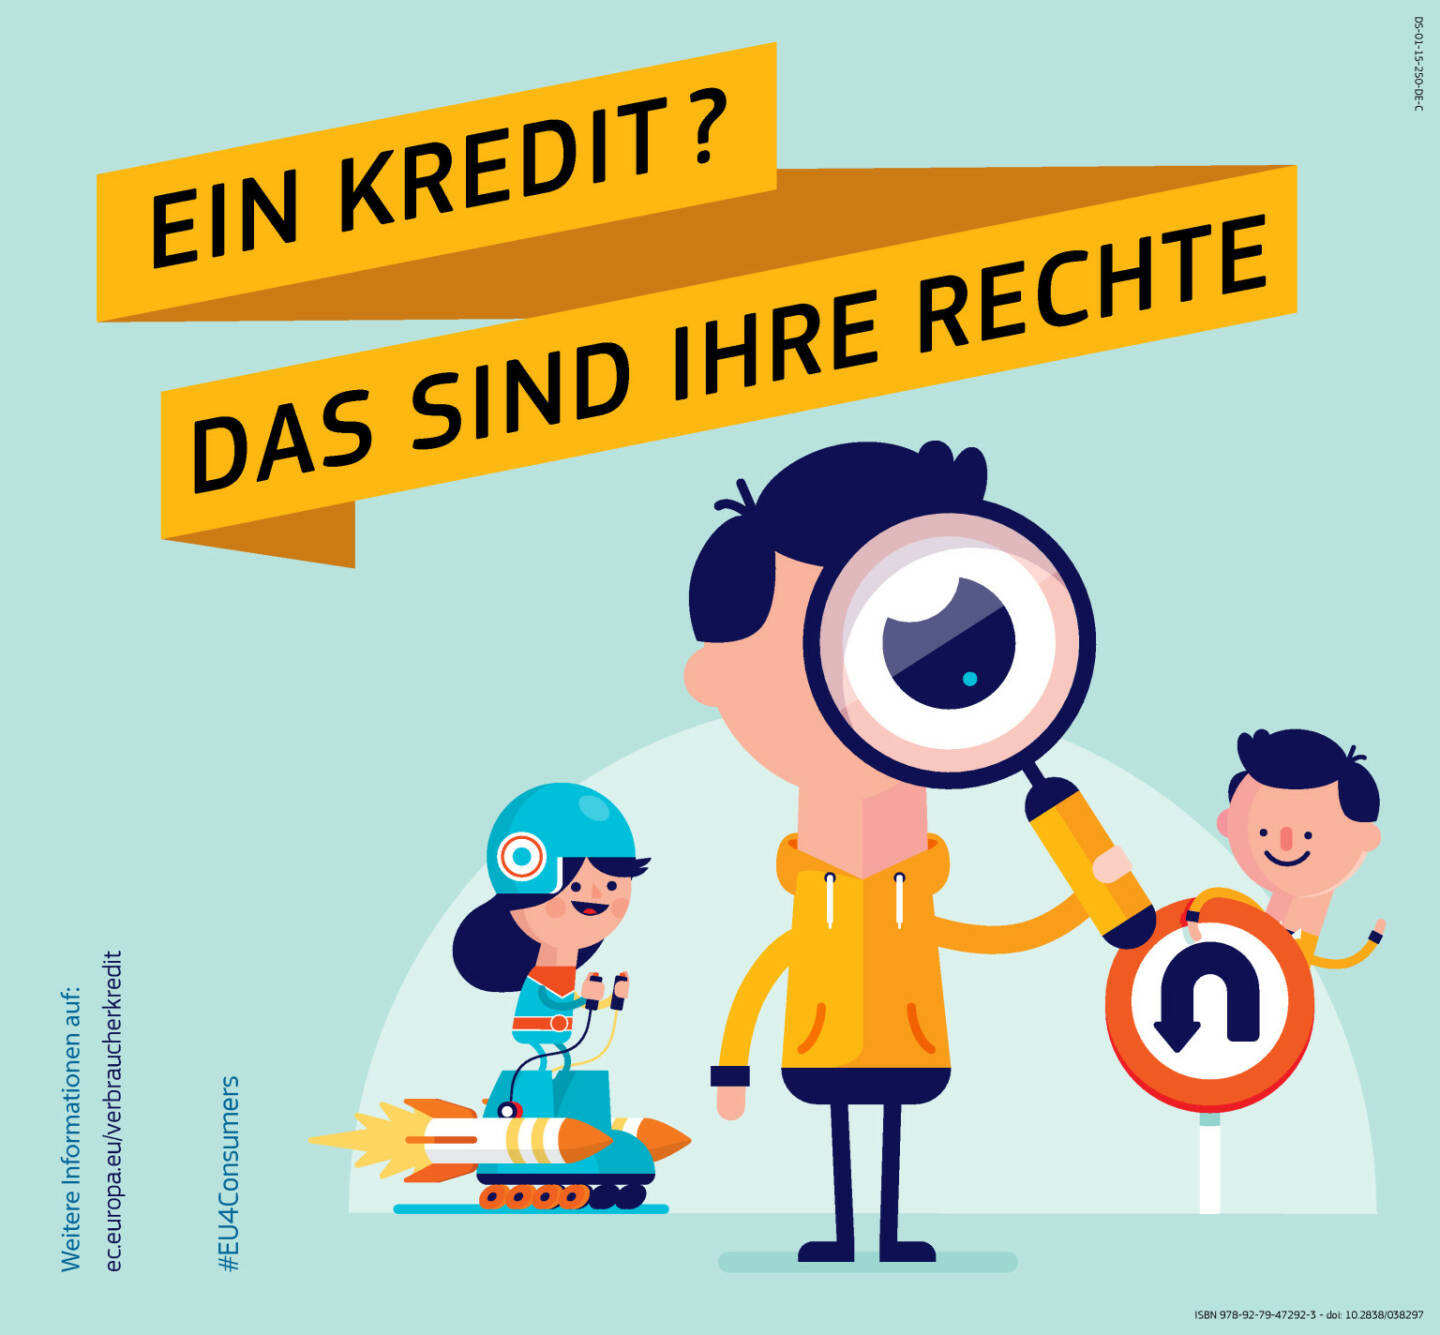 Aufholbedarf bei Finanzbildung: Nur sechs Prozent der Österreicher kennen Verbraucherkreditrechte, Seite 1/2, komplettes Dokument unter http://boerse-social.com/static/uploads/file_453_aufholbedarf_bei_finanzbildung_nur_sechs_prozent_der_osterreicher_kennen_verbraucherkreditrechte.pdf